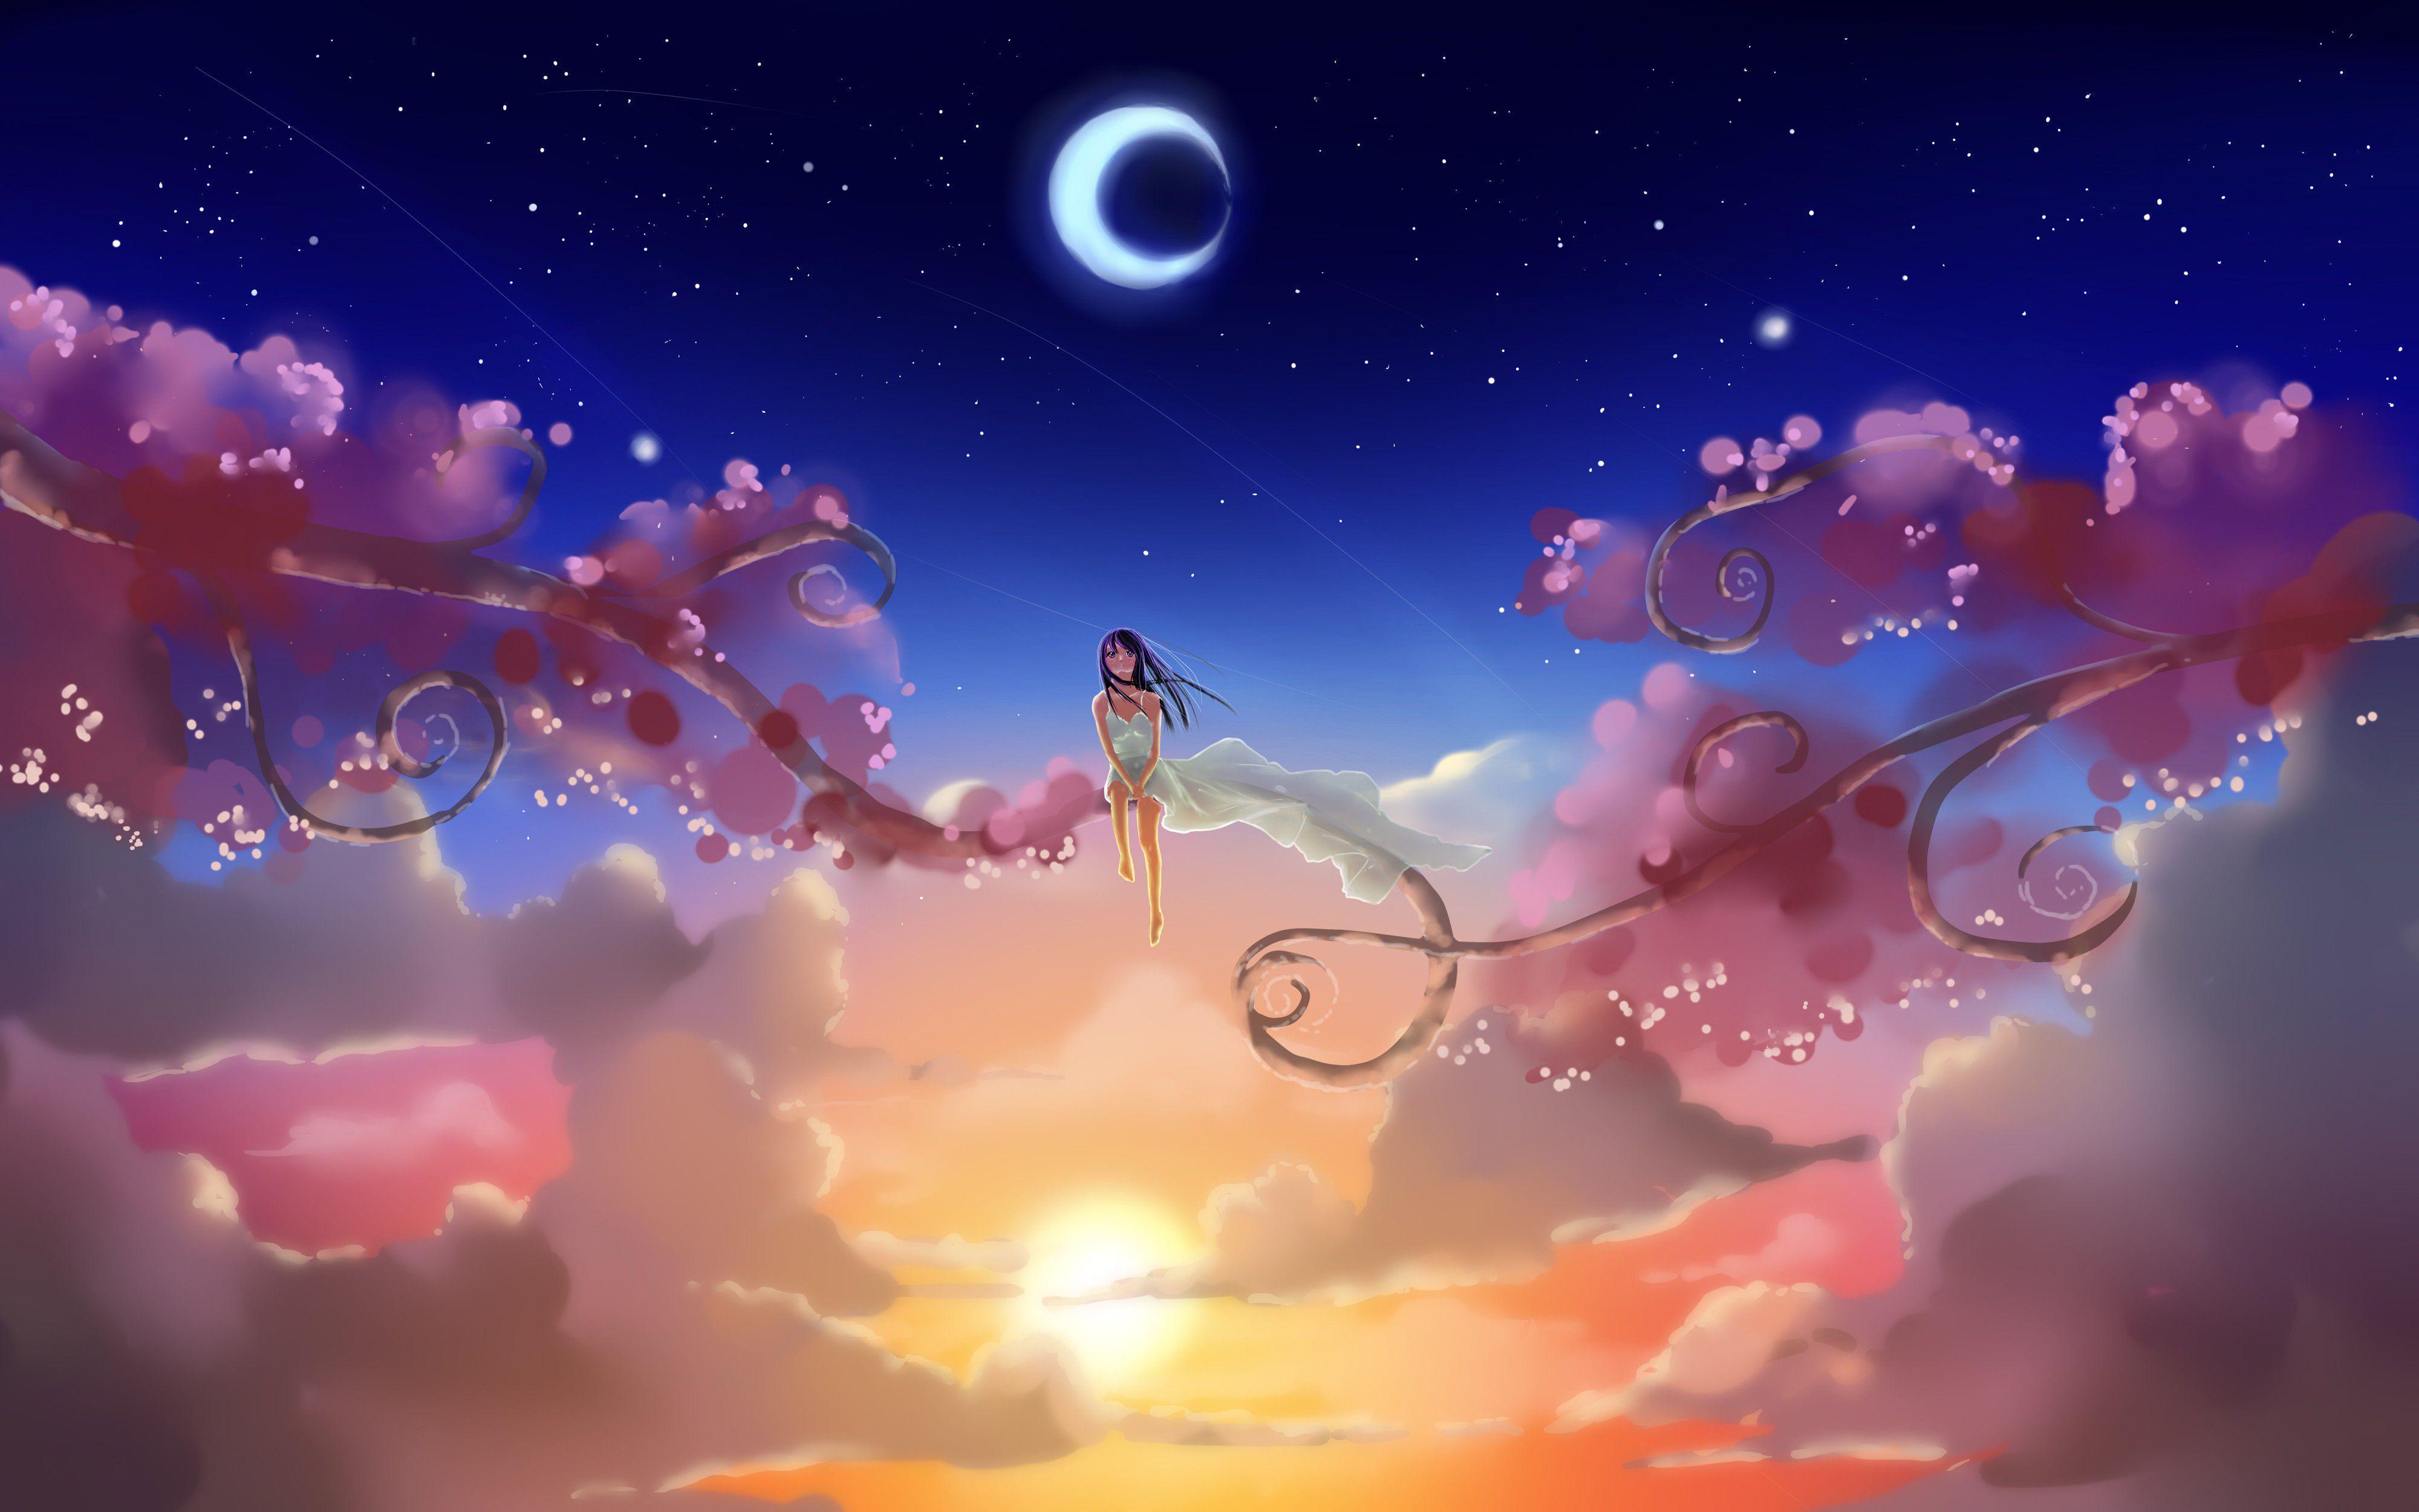 4K Anime Art Wallpapers - Top Những Hình Ảnh Đẹp